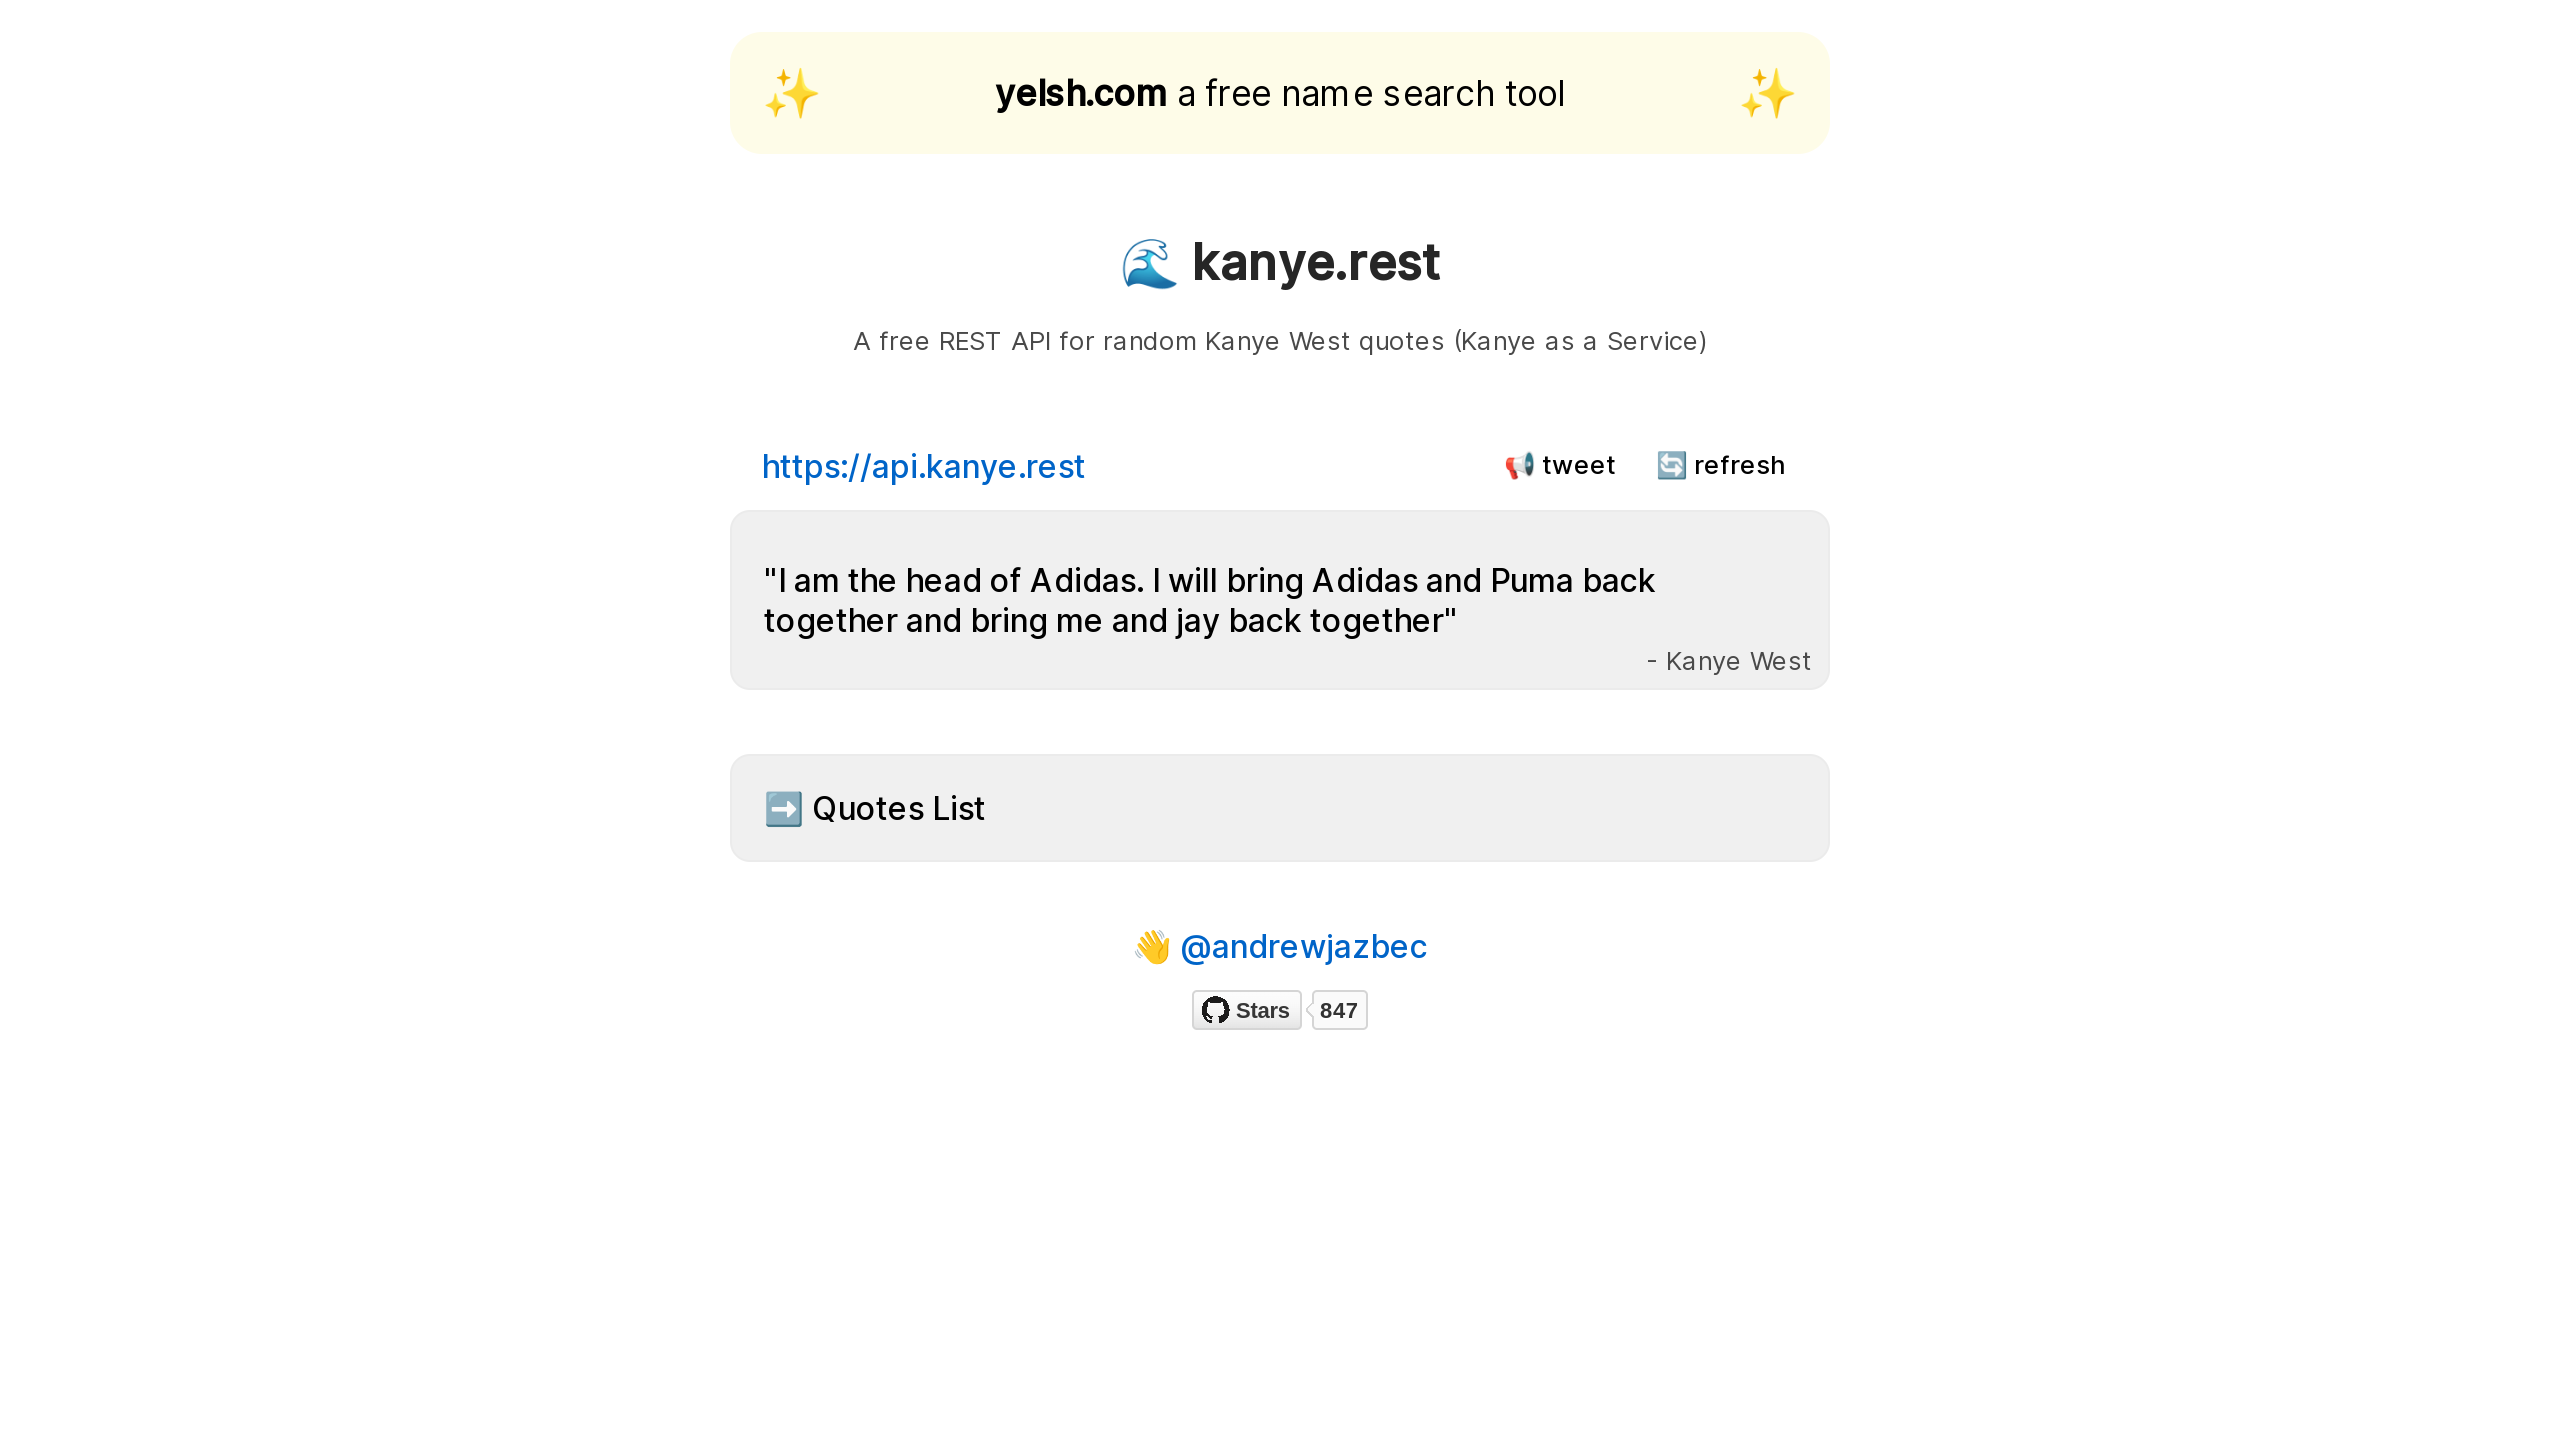 kanye.rest's website screenshot